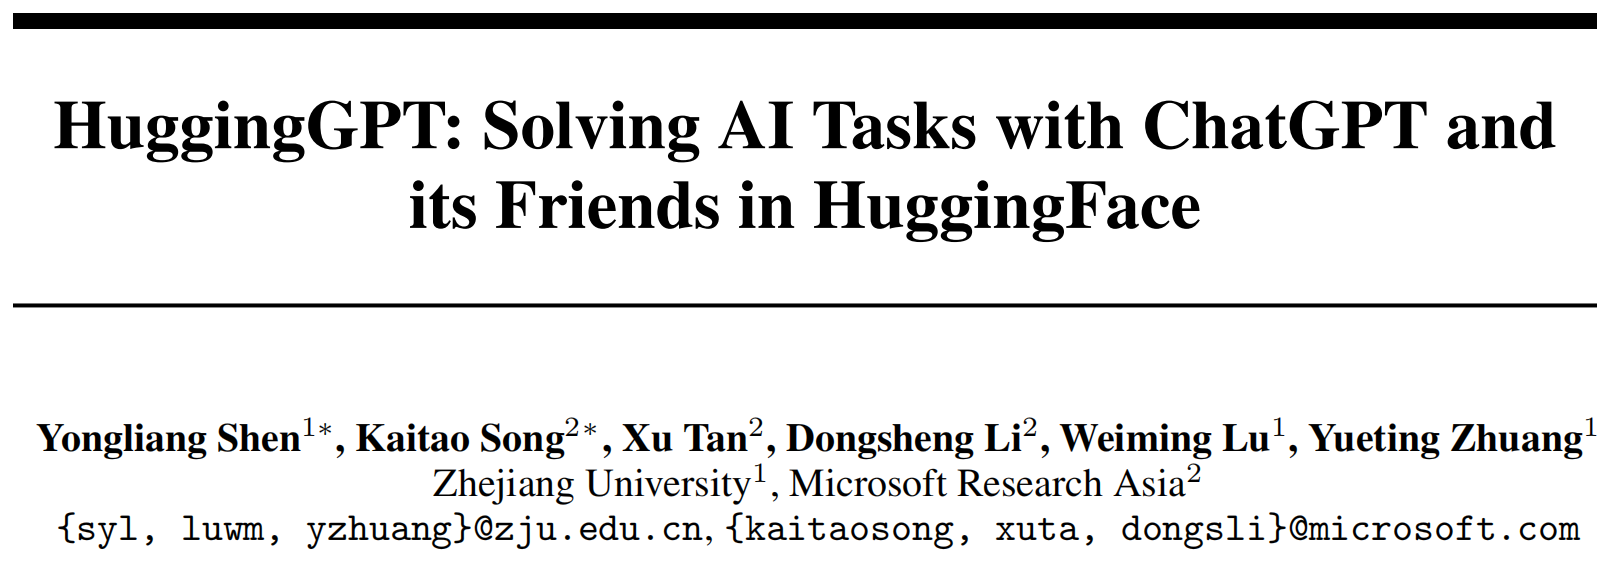 浙大庄越挺教授团队提出HuggingGPT：让模型自己解决AI任务